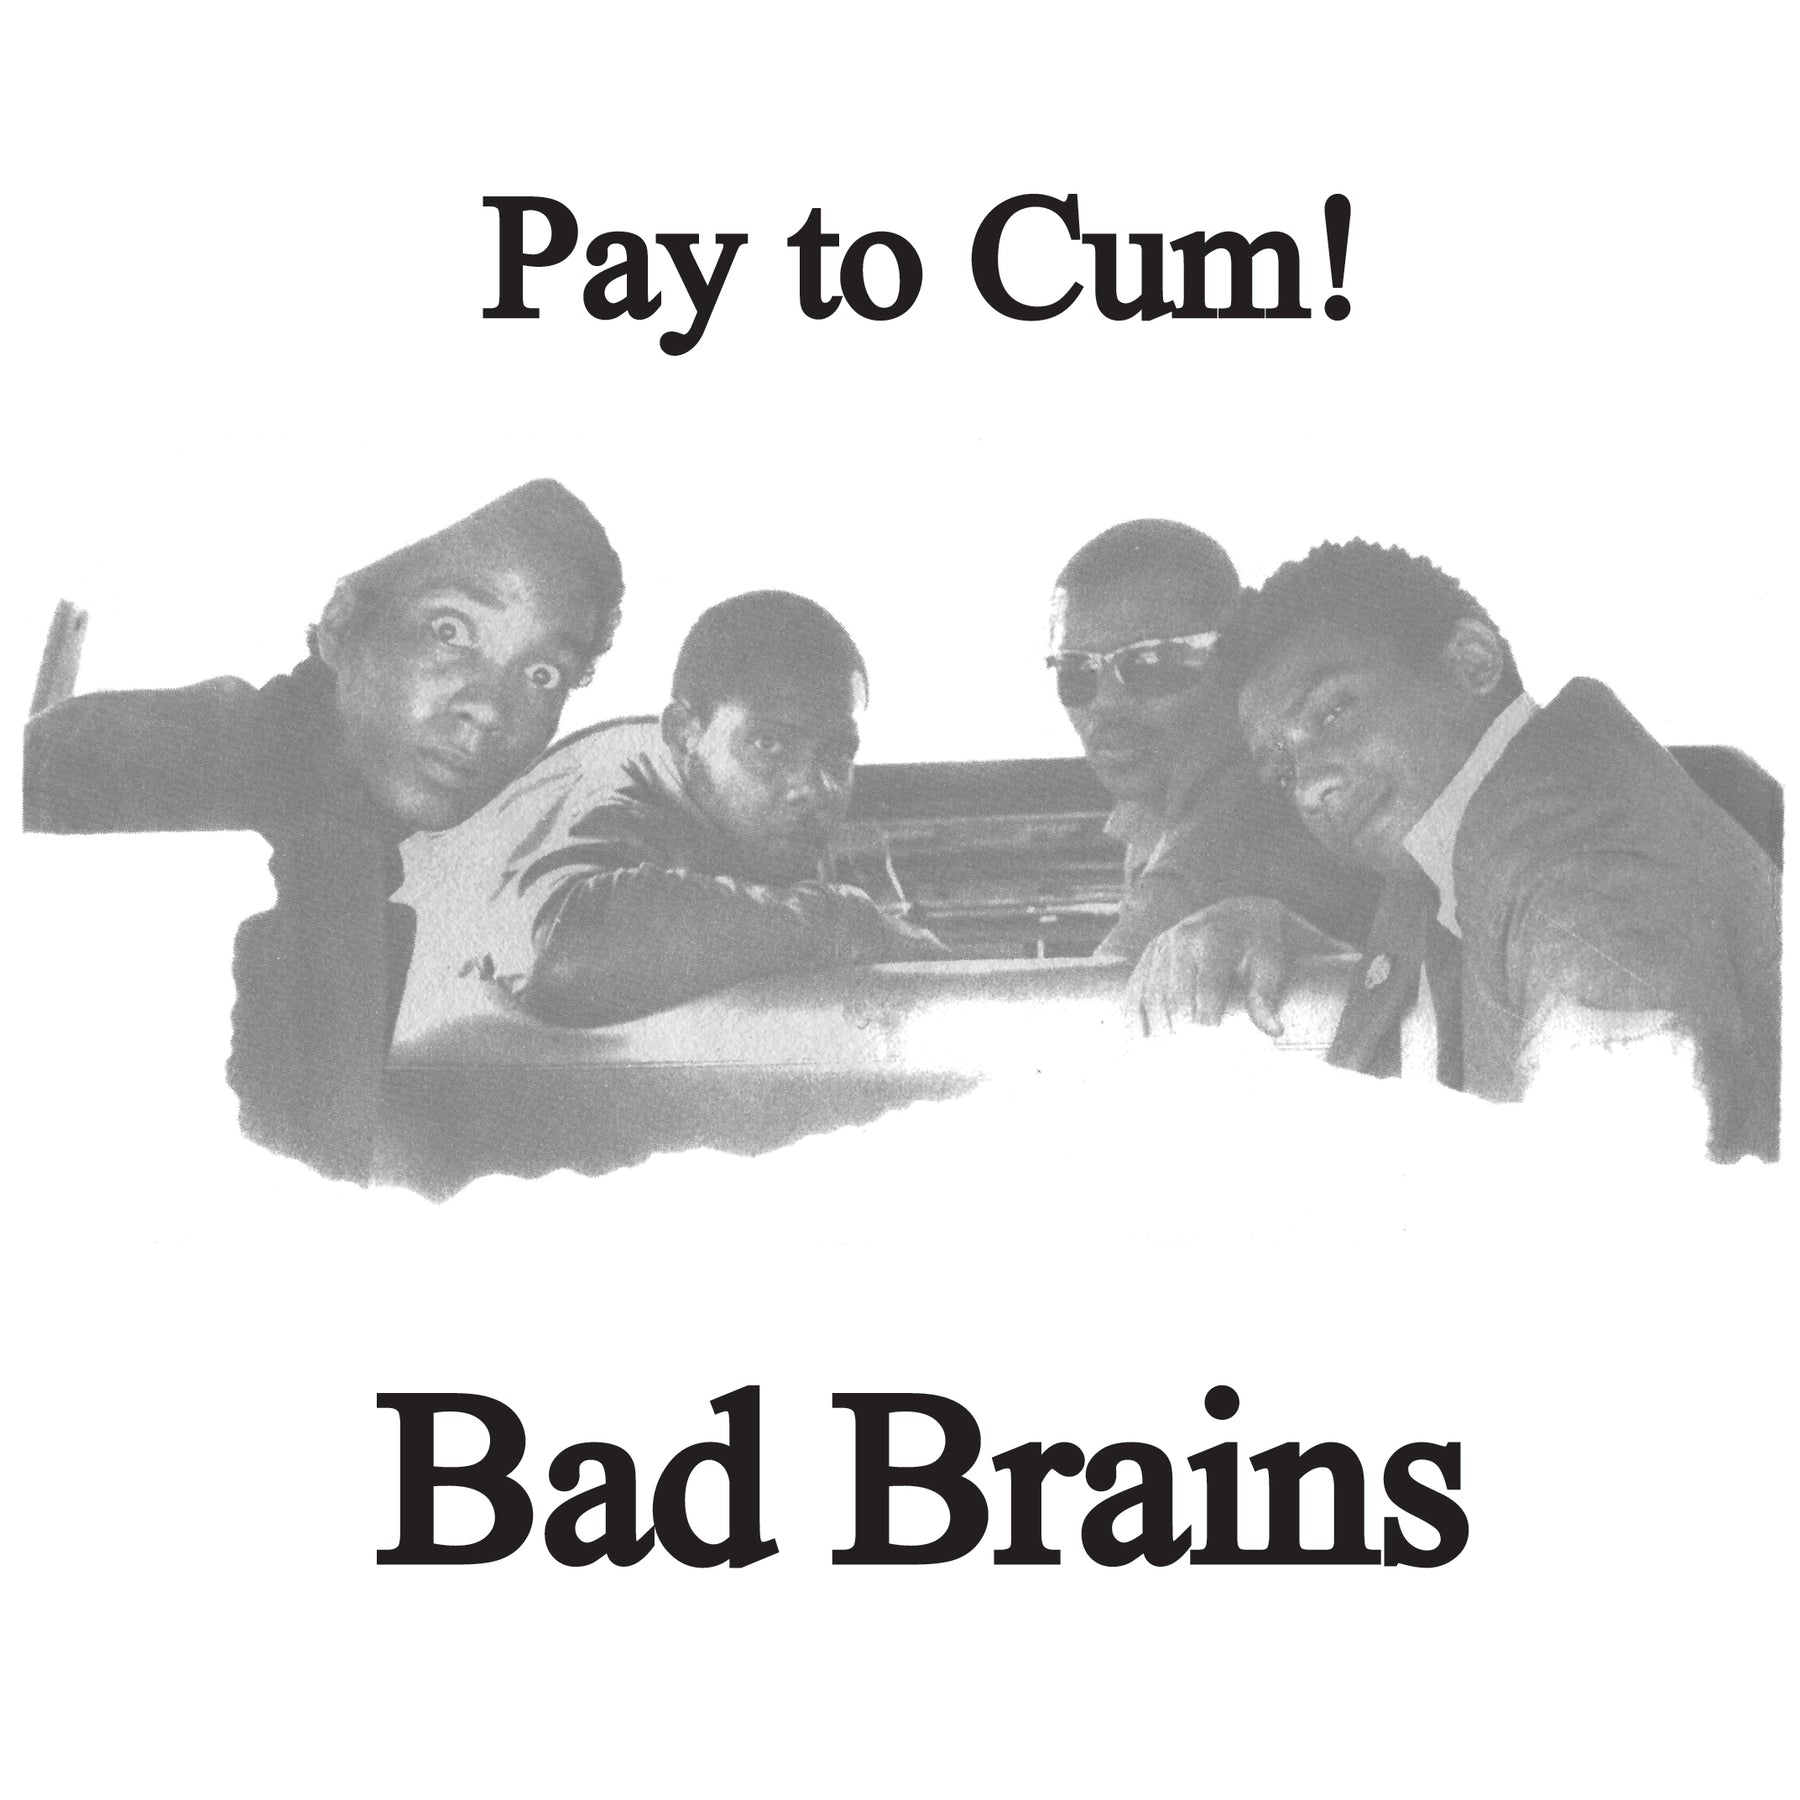 BAD BRAINS - PAY TO CUM Vinyl 7"